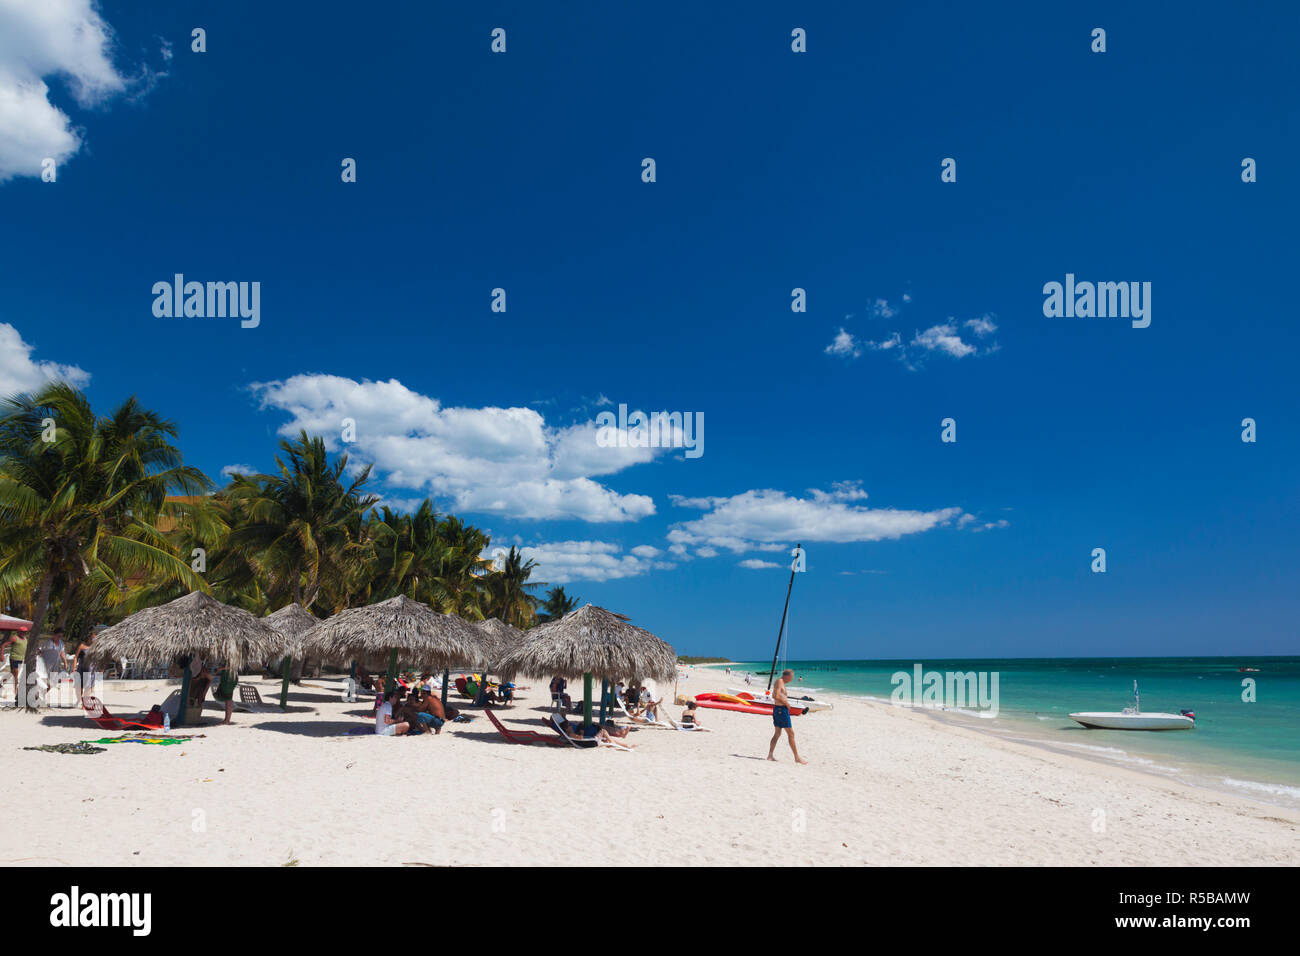 La province de Sancti Spiritus, Cuba, Trinidad, Playa Ancon beach Banque D'Images